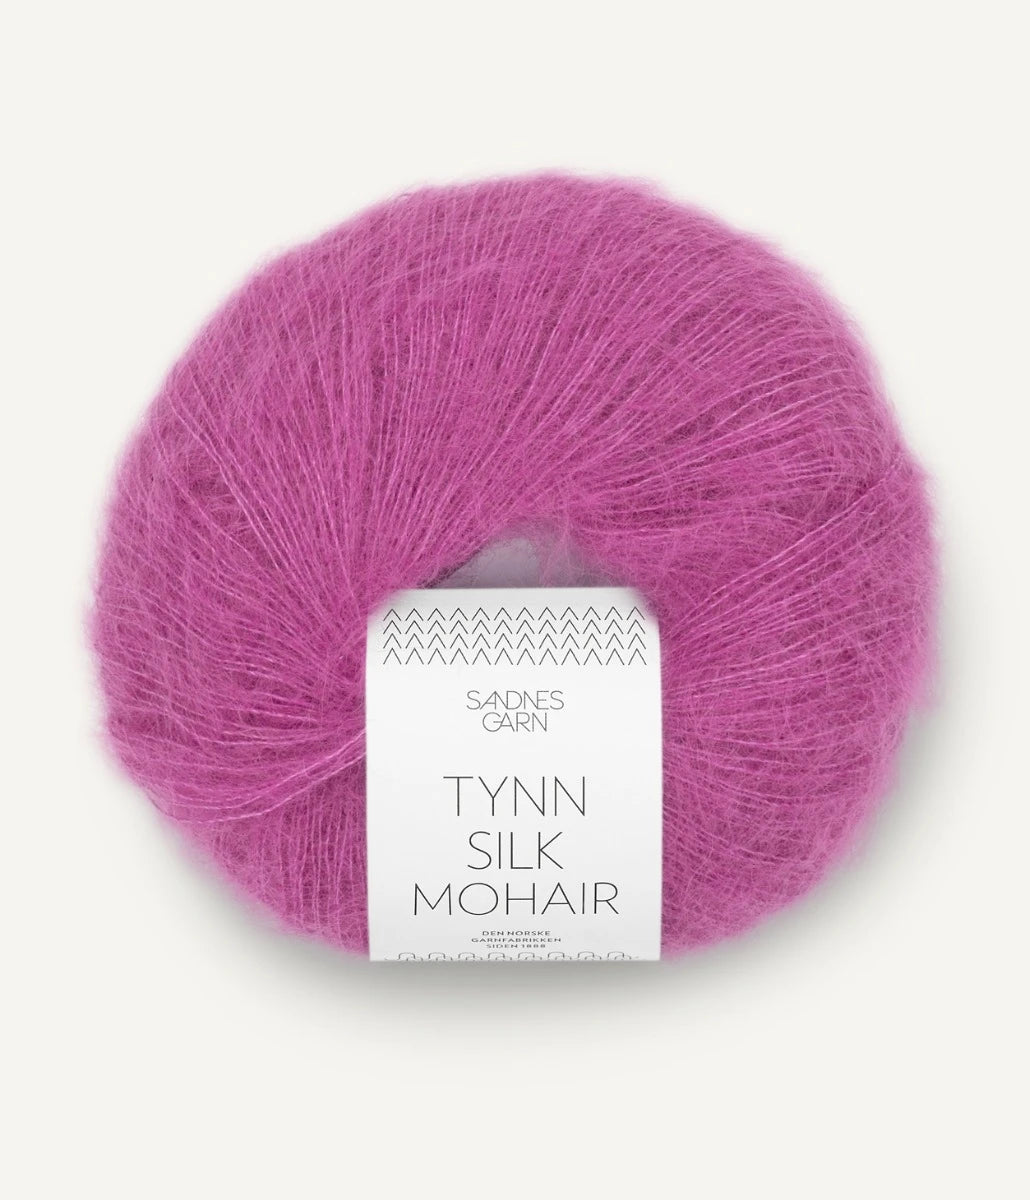 Kuvassa on Sandnes Garn Tynn Silk Mohair -lanka (yarn) värissä Magenta.